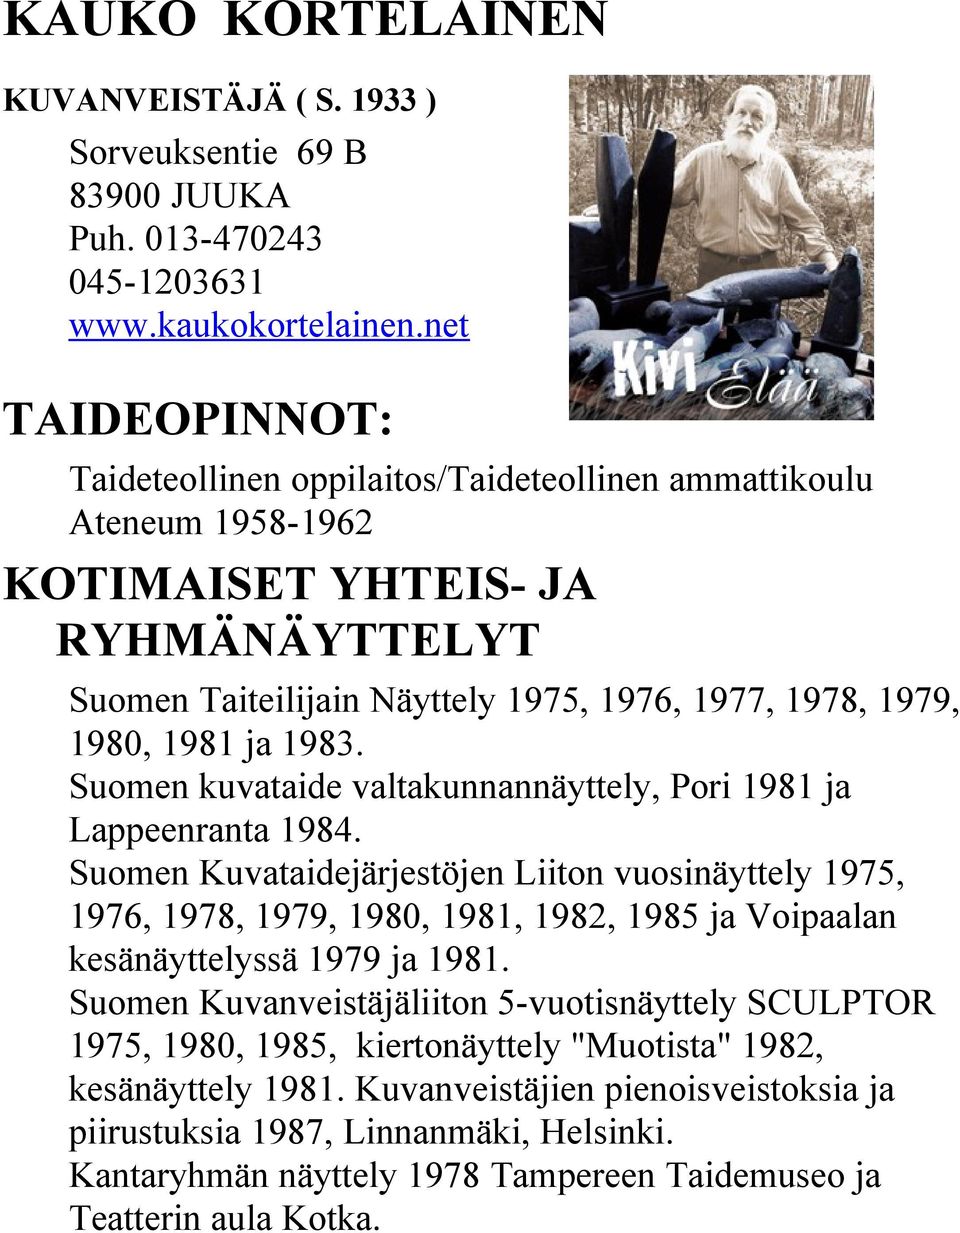 1983. Suomen kuvataide valtakunnannäyttely, Pori 1981 ja Lappeenranta 1984.